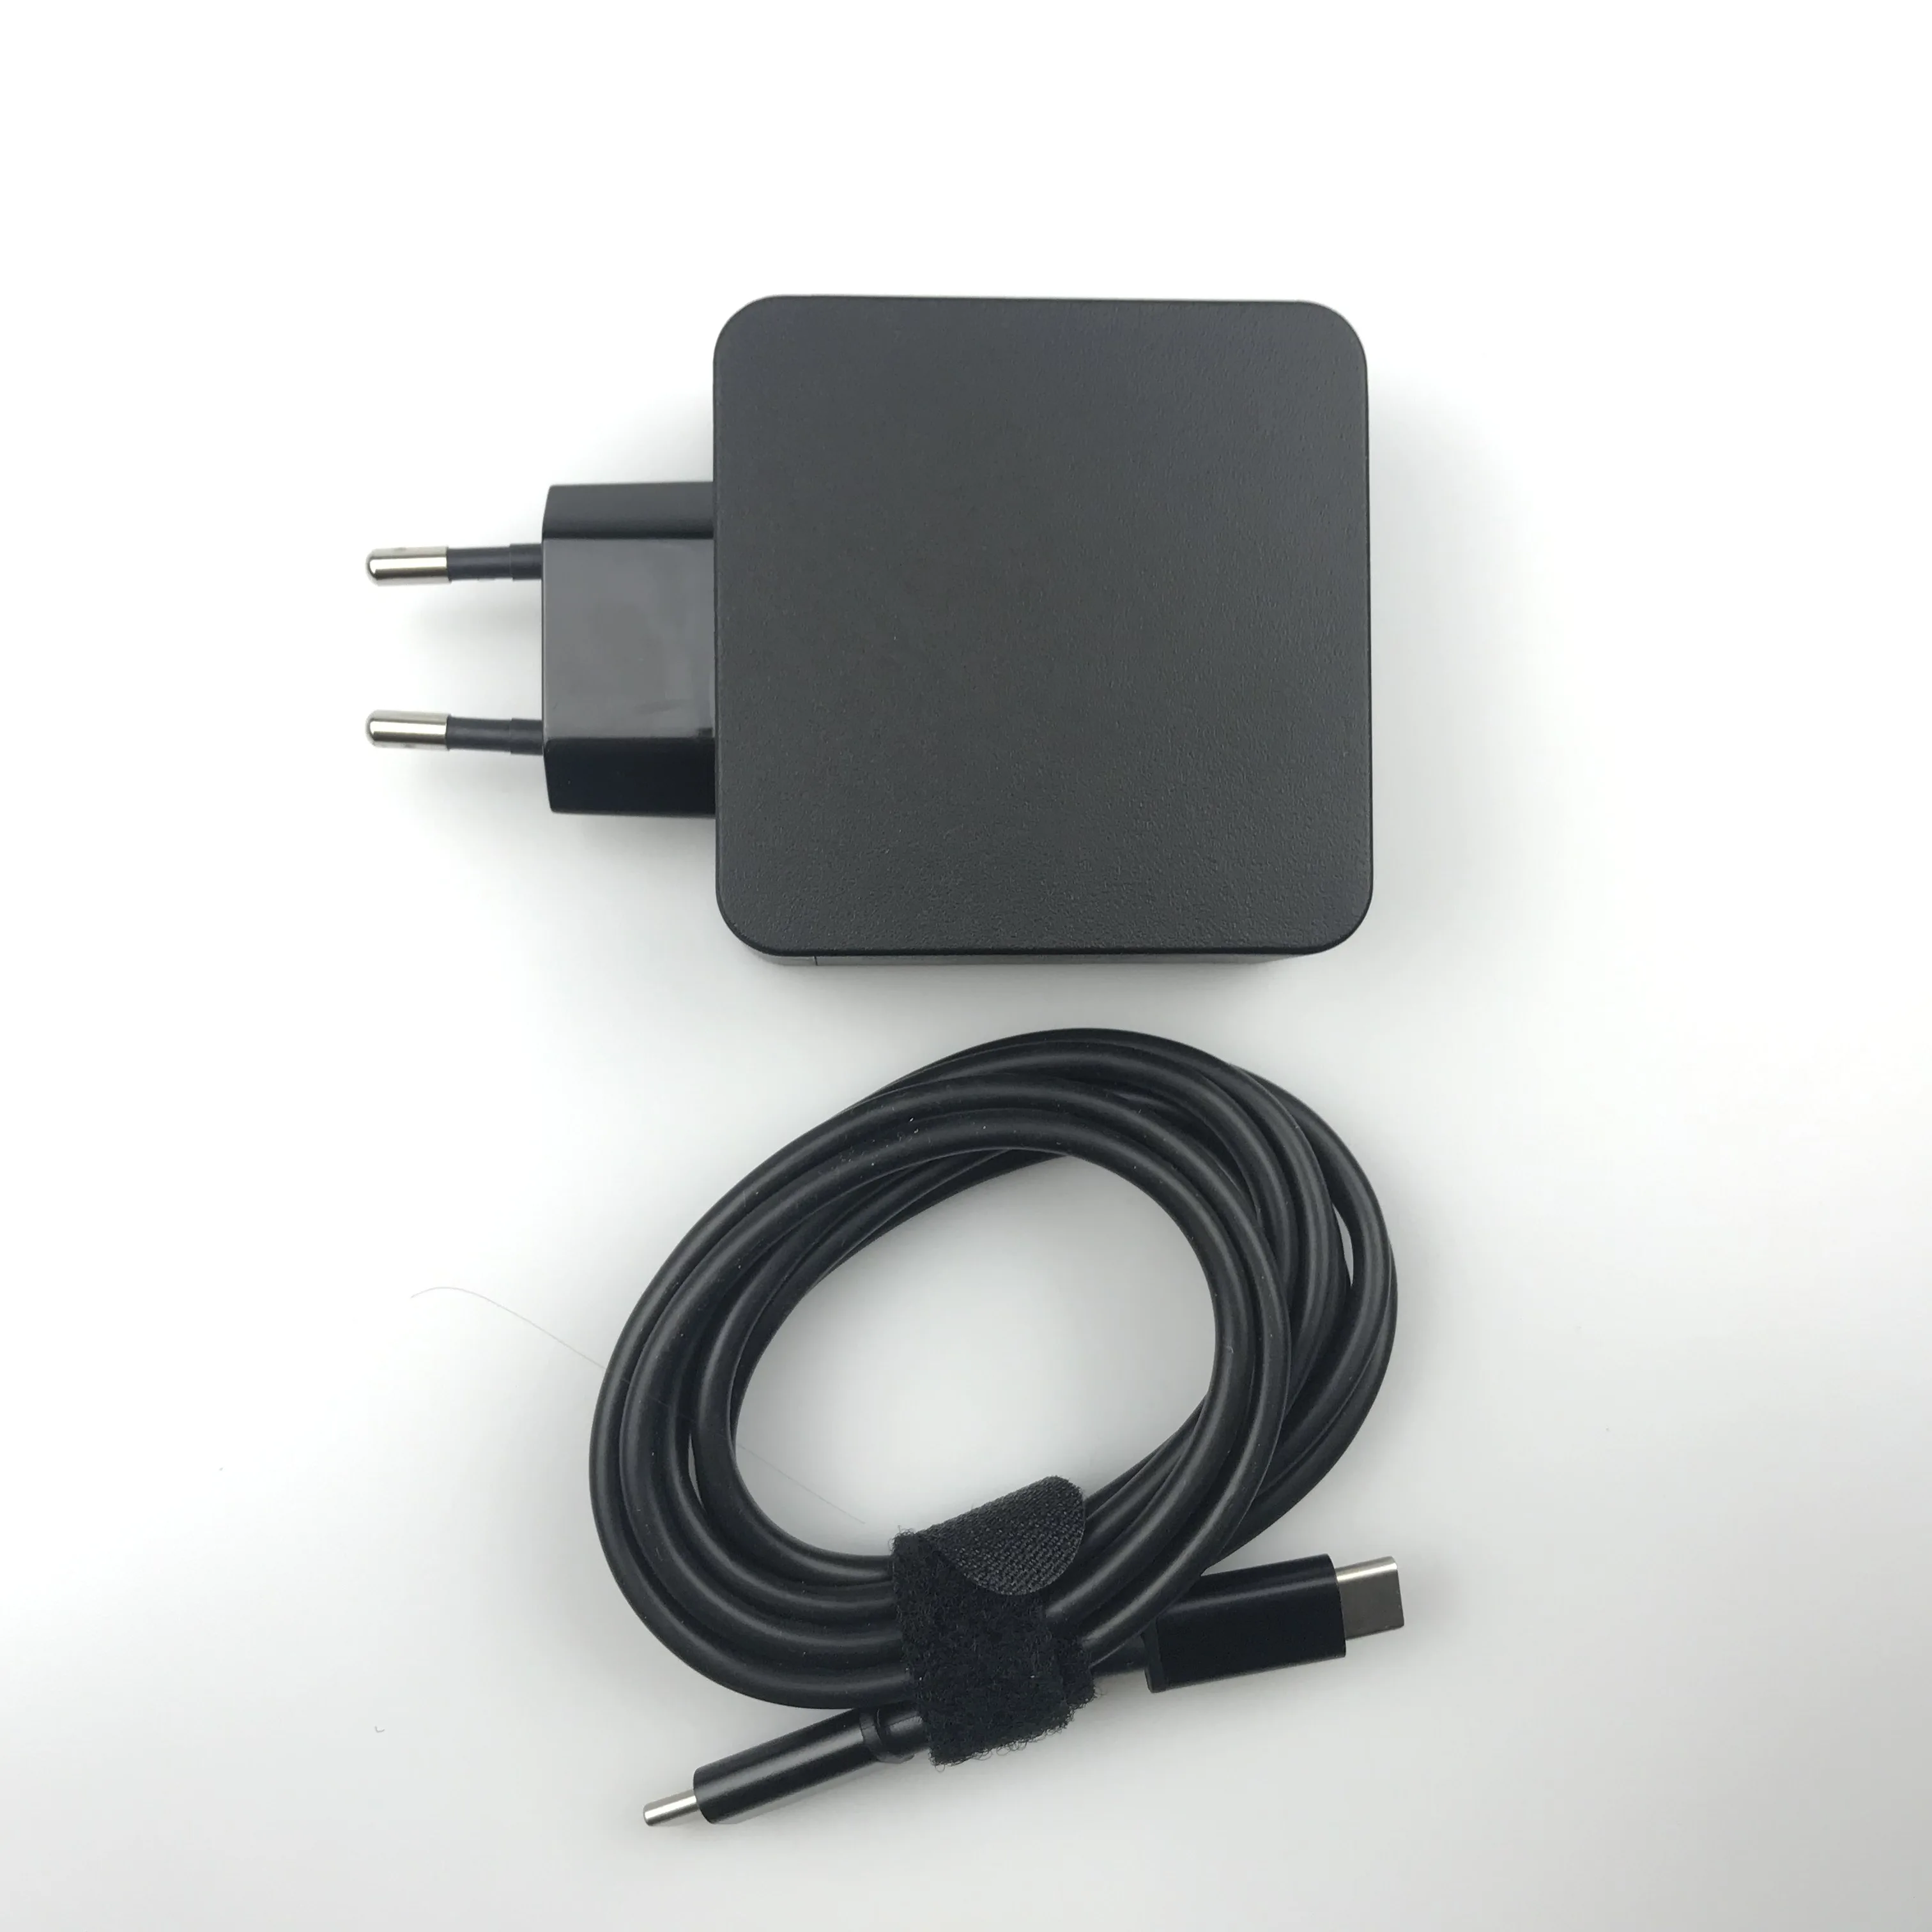 65 Вт USB C AC адапторное зарядное устройство для lenovo Йога 370 730 730-13IKB Йога 920 S730-13 C930-13 lenovo ThinkPad X1 углерода 4th 5th 6th